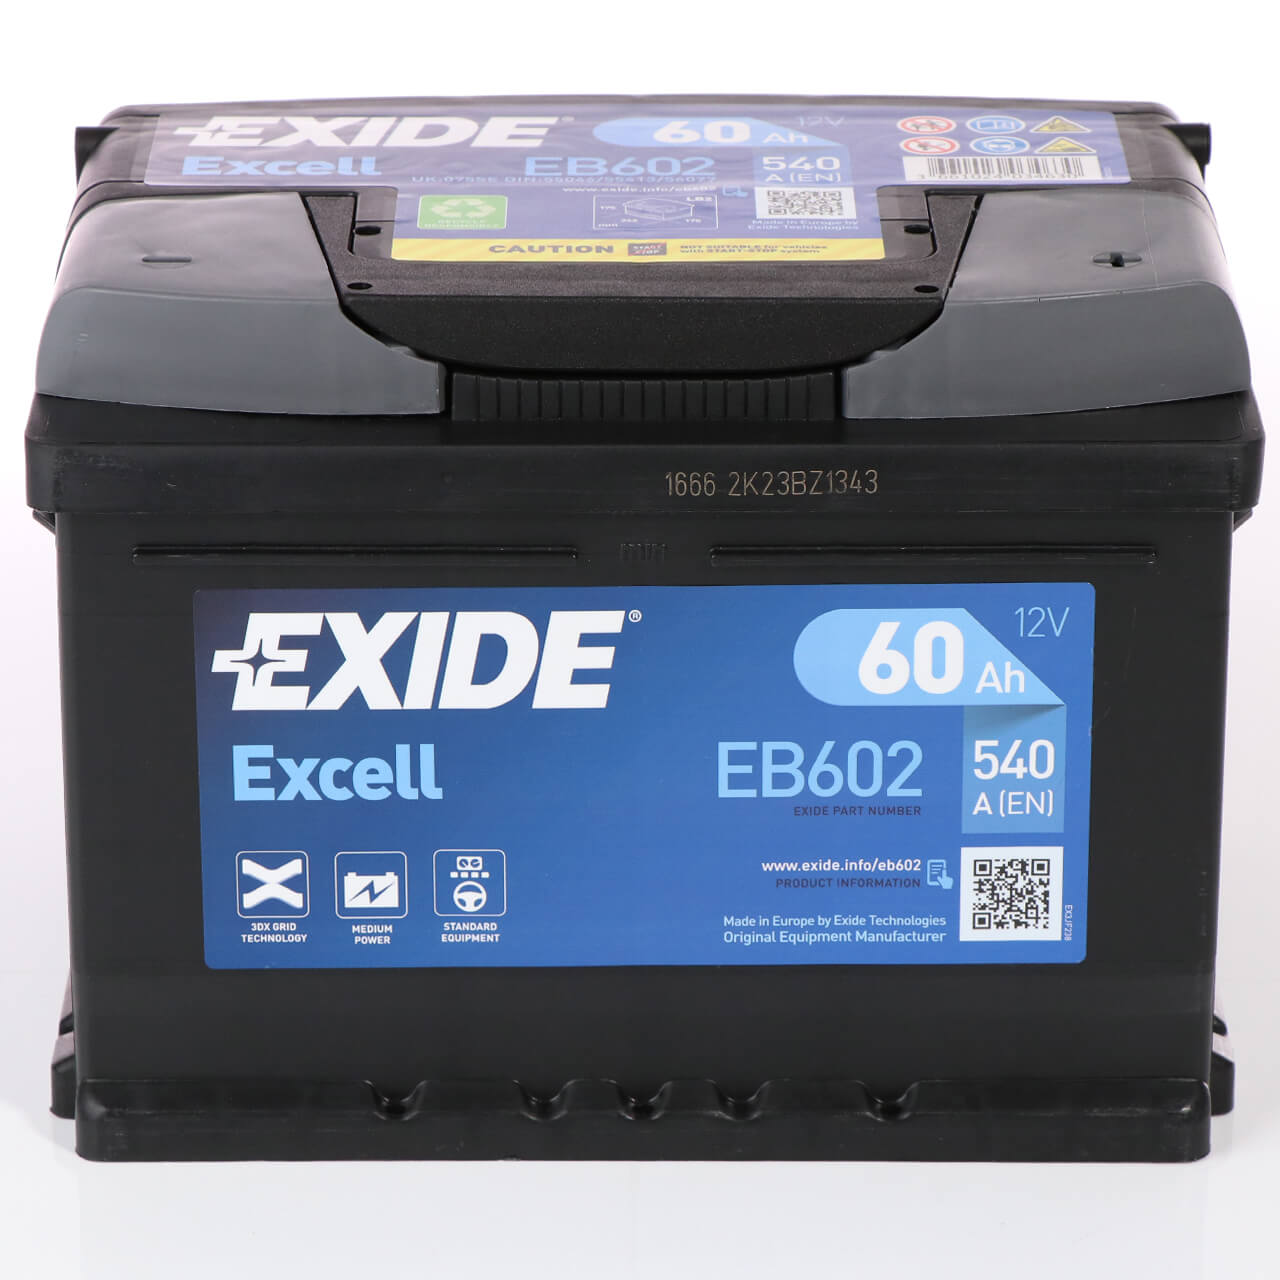 Batteria per auto Exide Excell 60AH 540 spunto 12V EB602 positivo dx